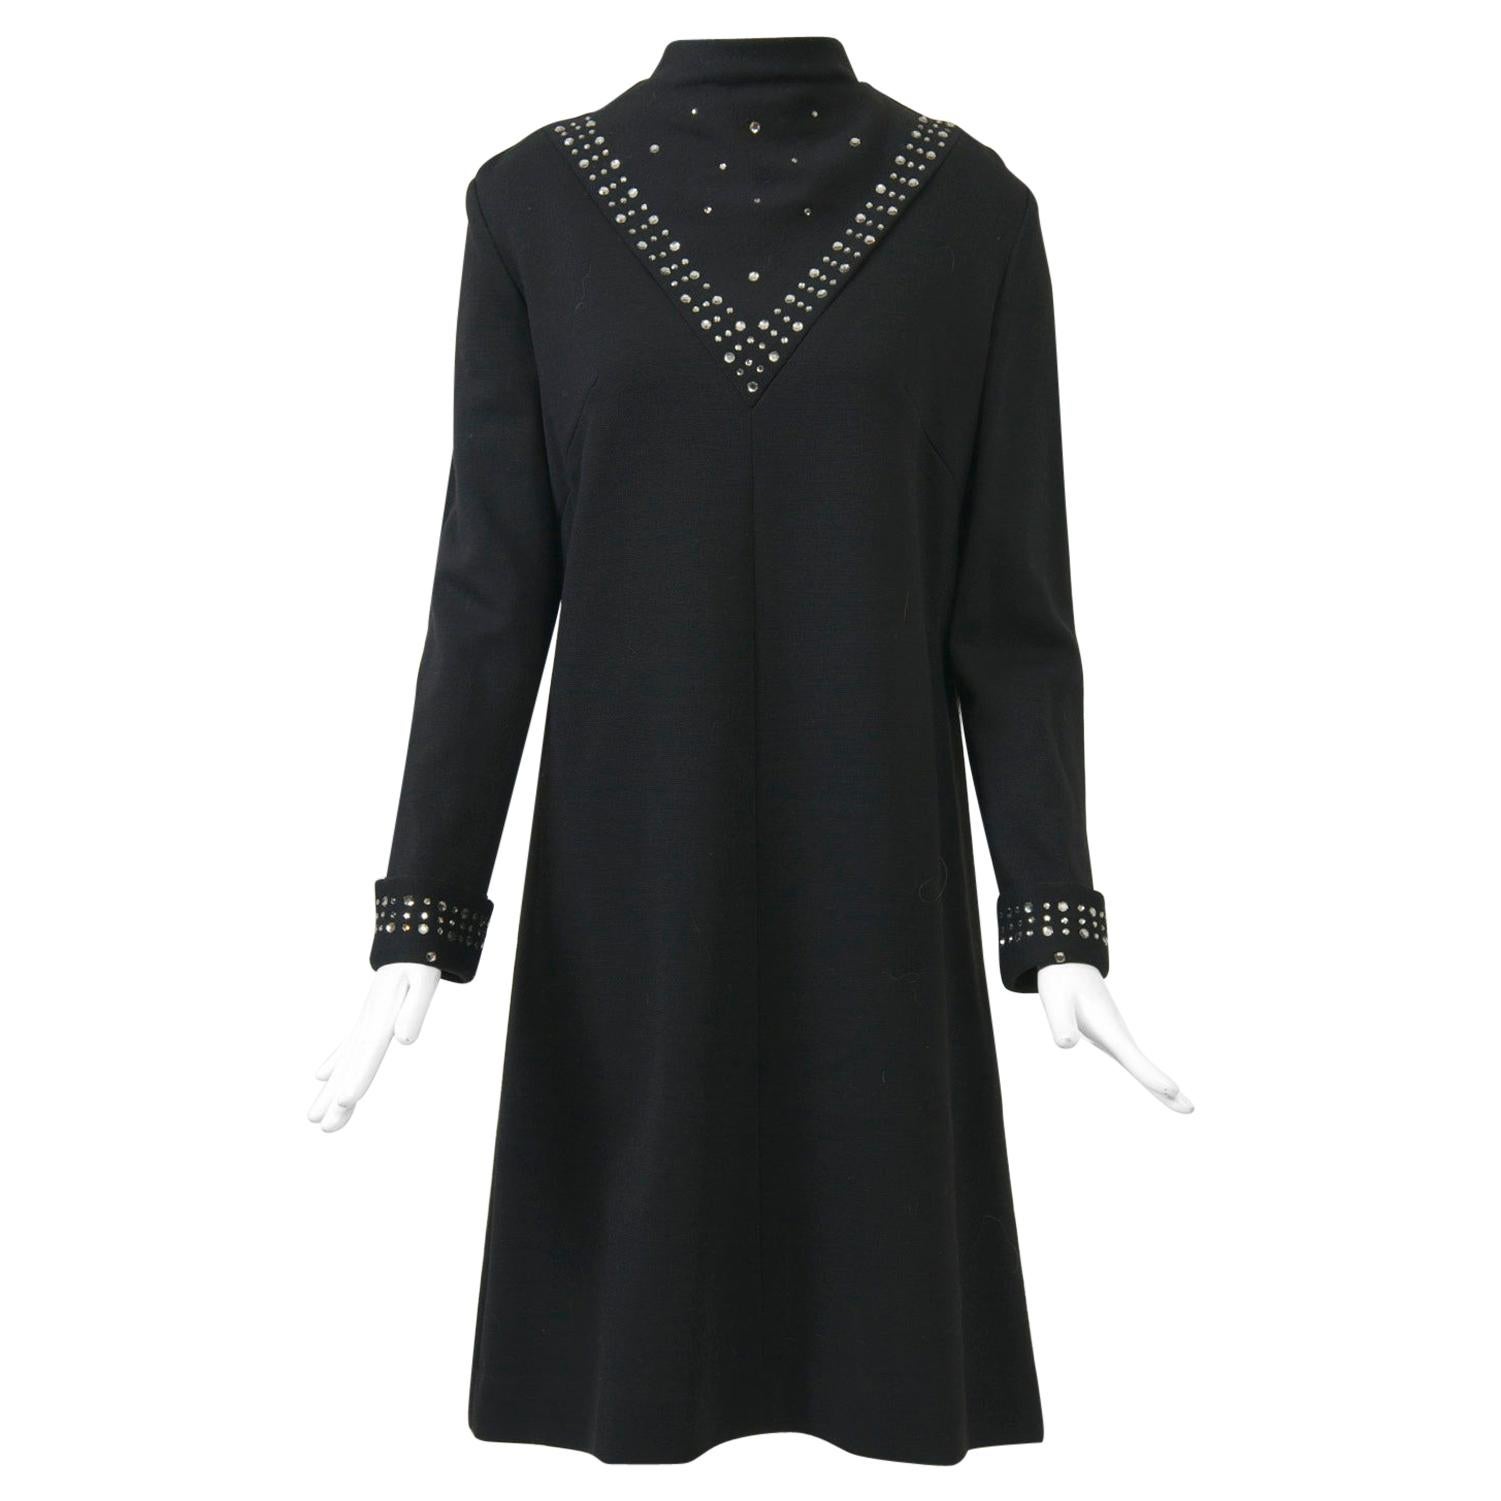 Black Knit Dress with Rhinestone Trim